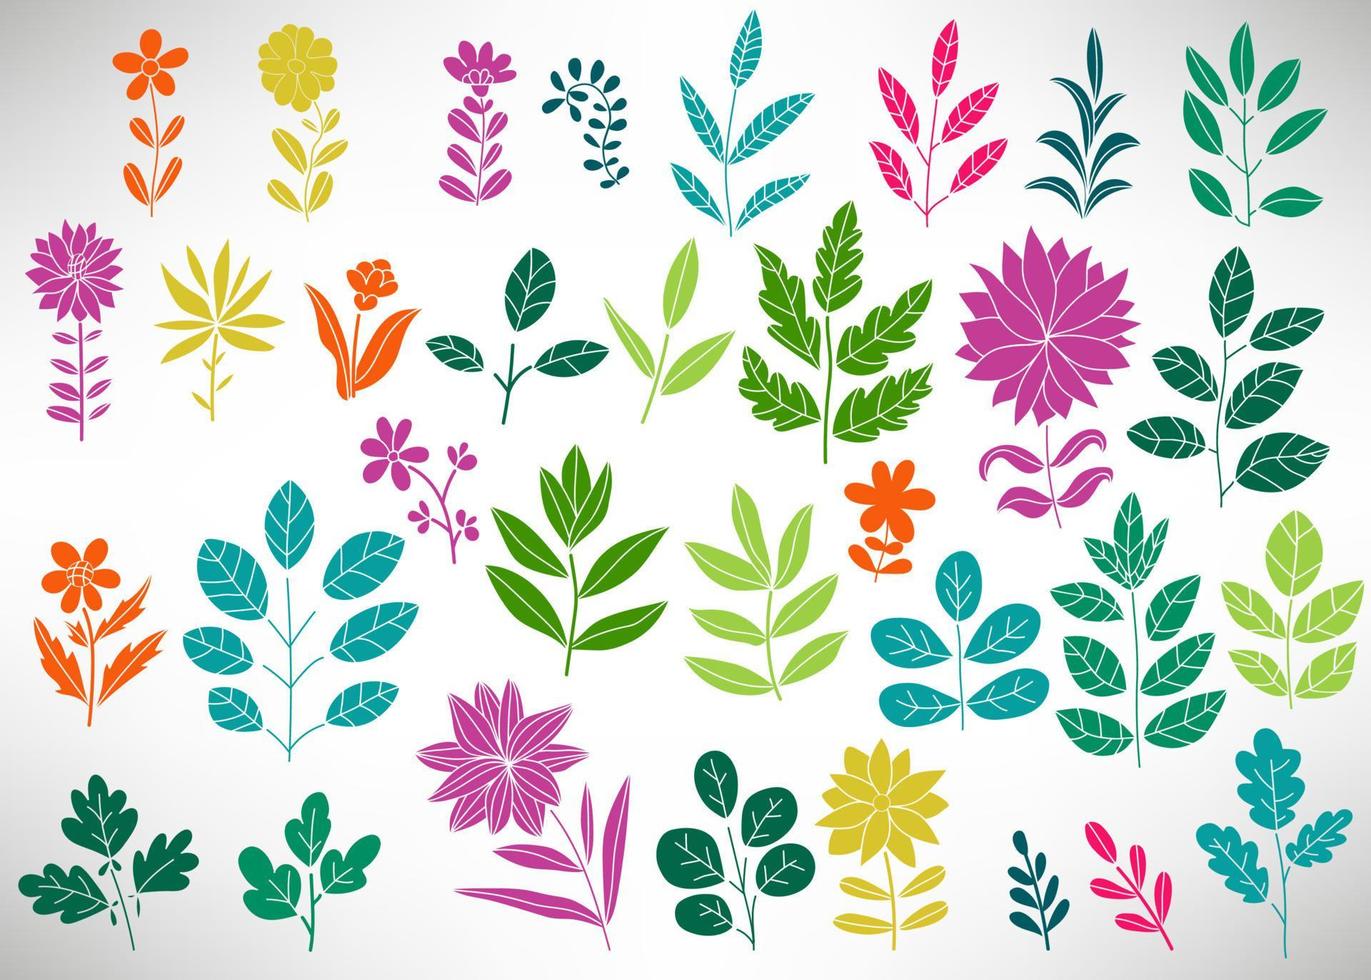 blommig uppsättning färgglada doodle element, trädgren, buske, växt, löv, blommor, grenar kronblad isolerade på vitt. samling av blomstrande element för design. vektor